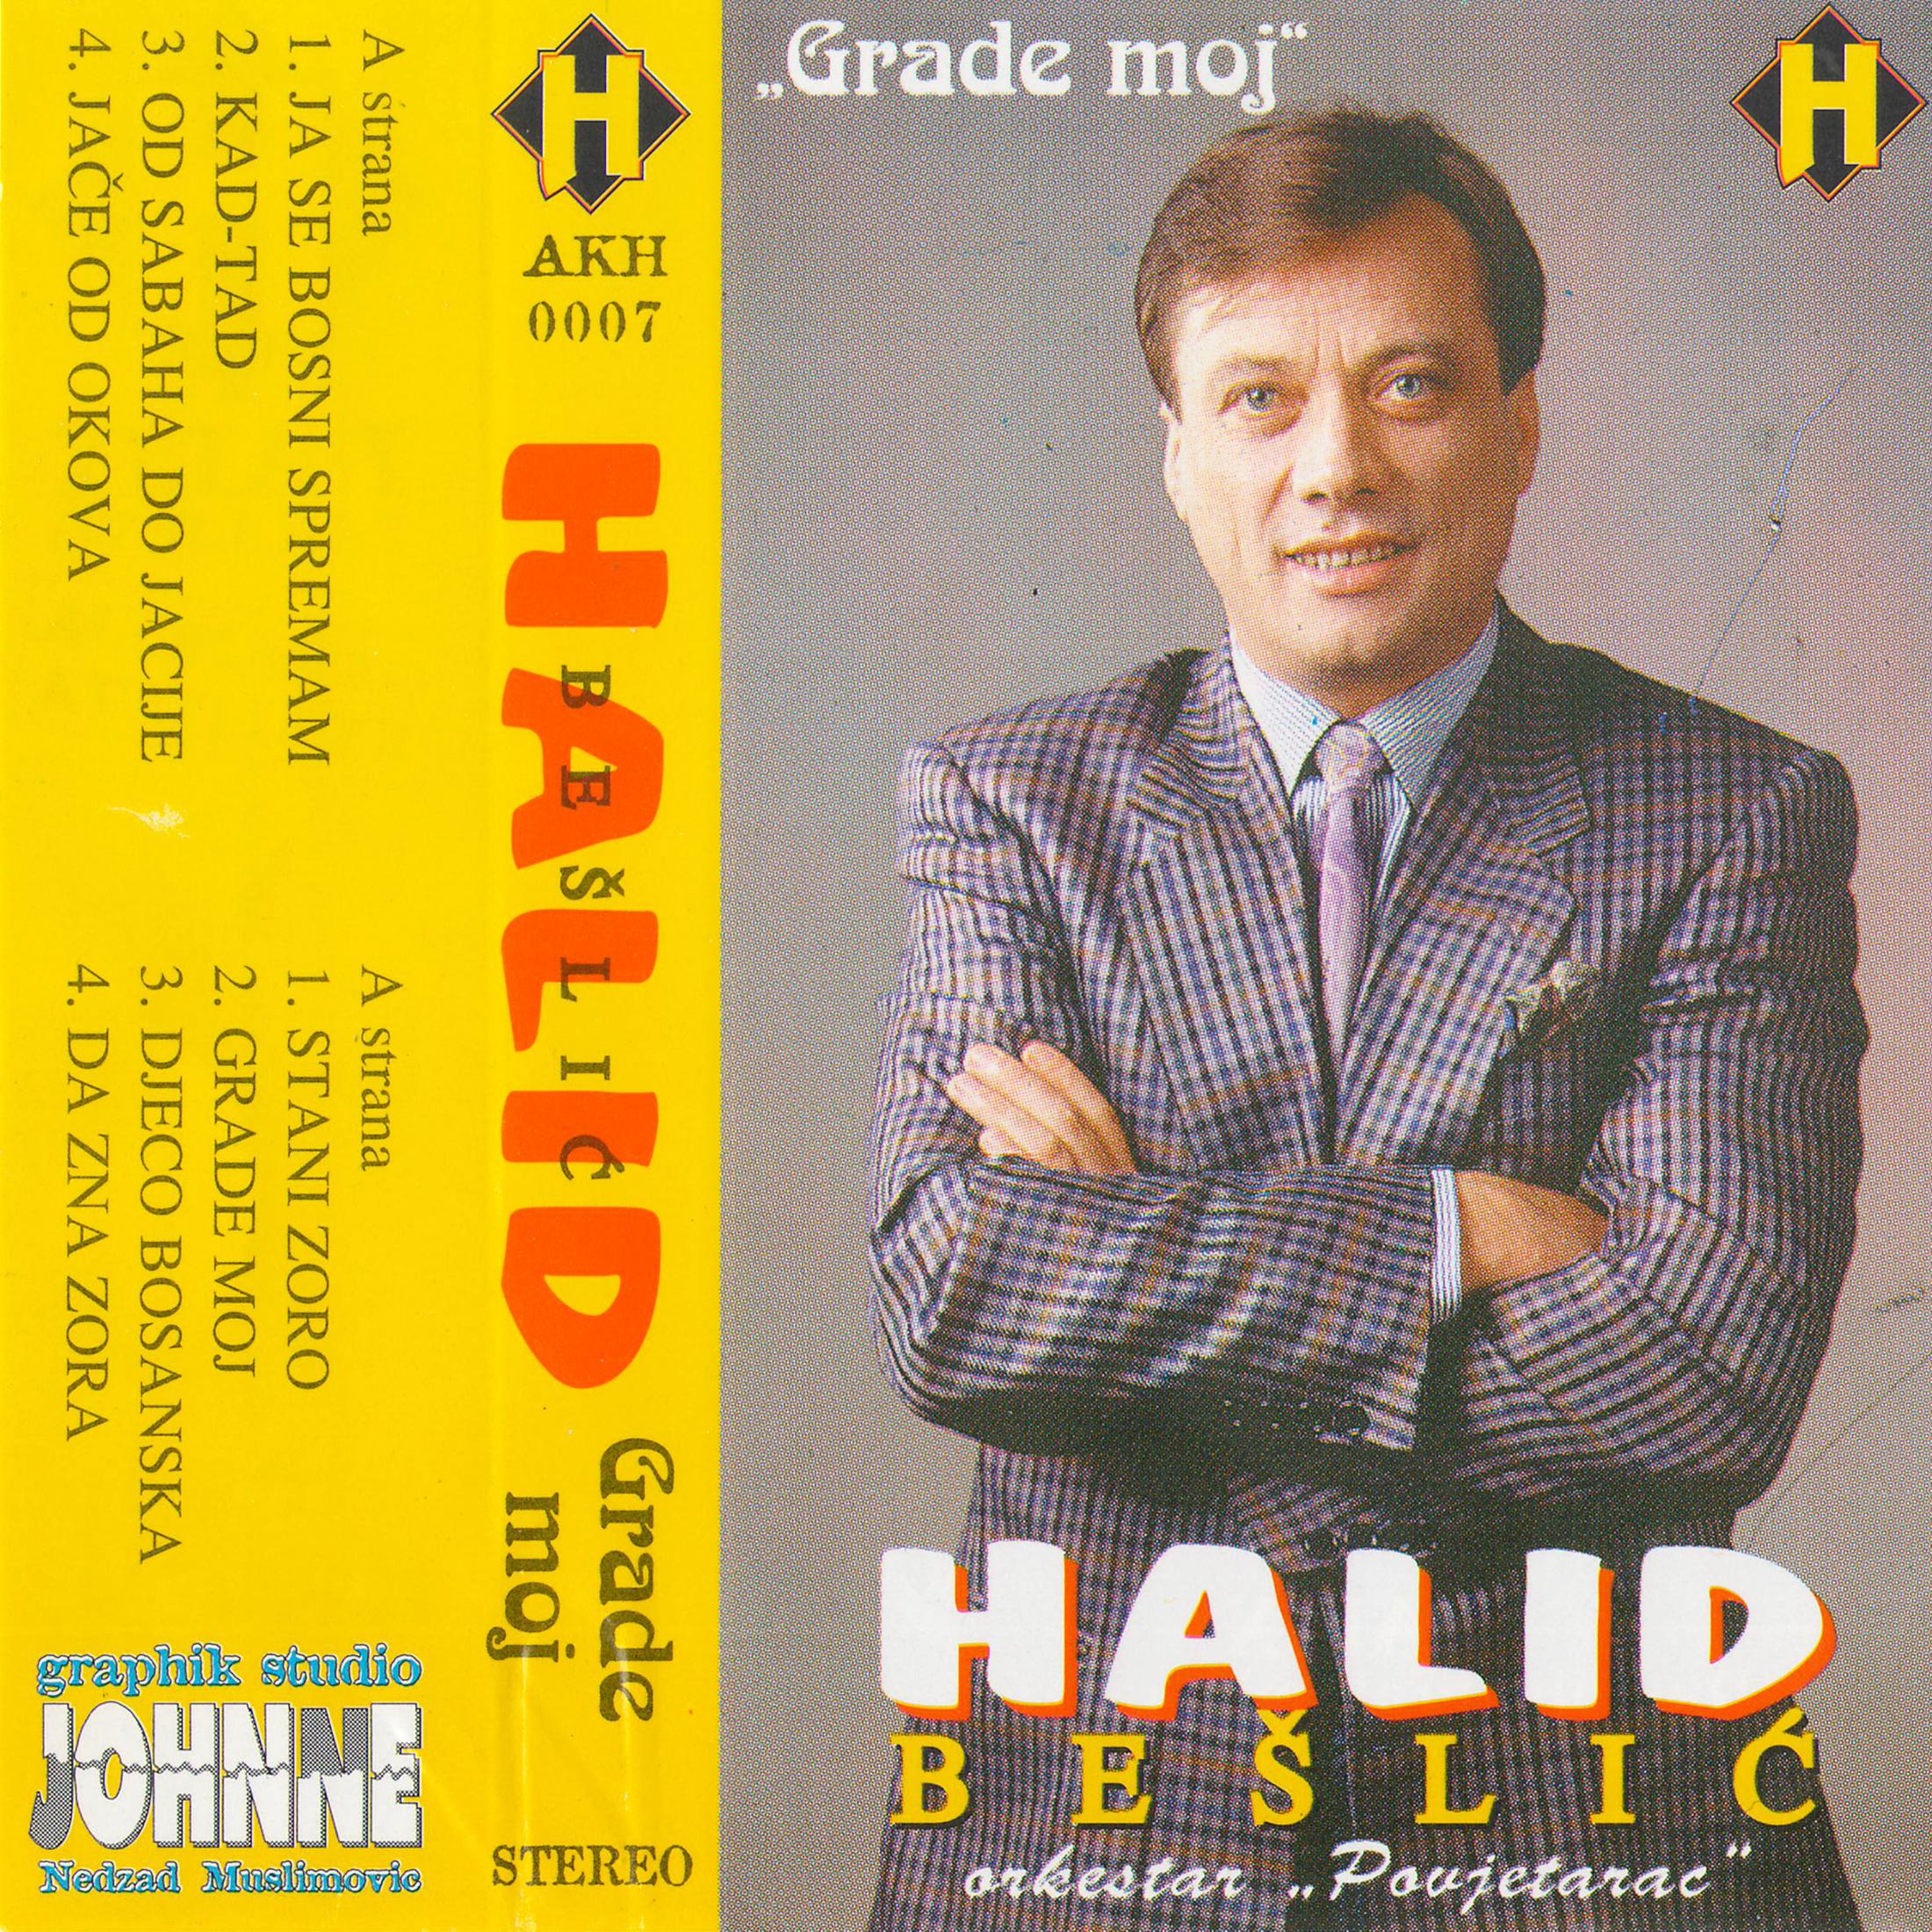 Od sabaha do jacije (Bosnian music)